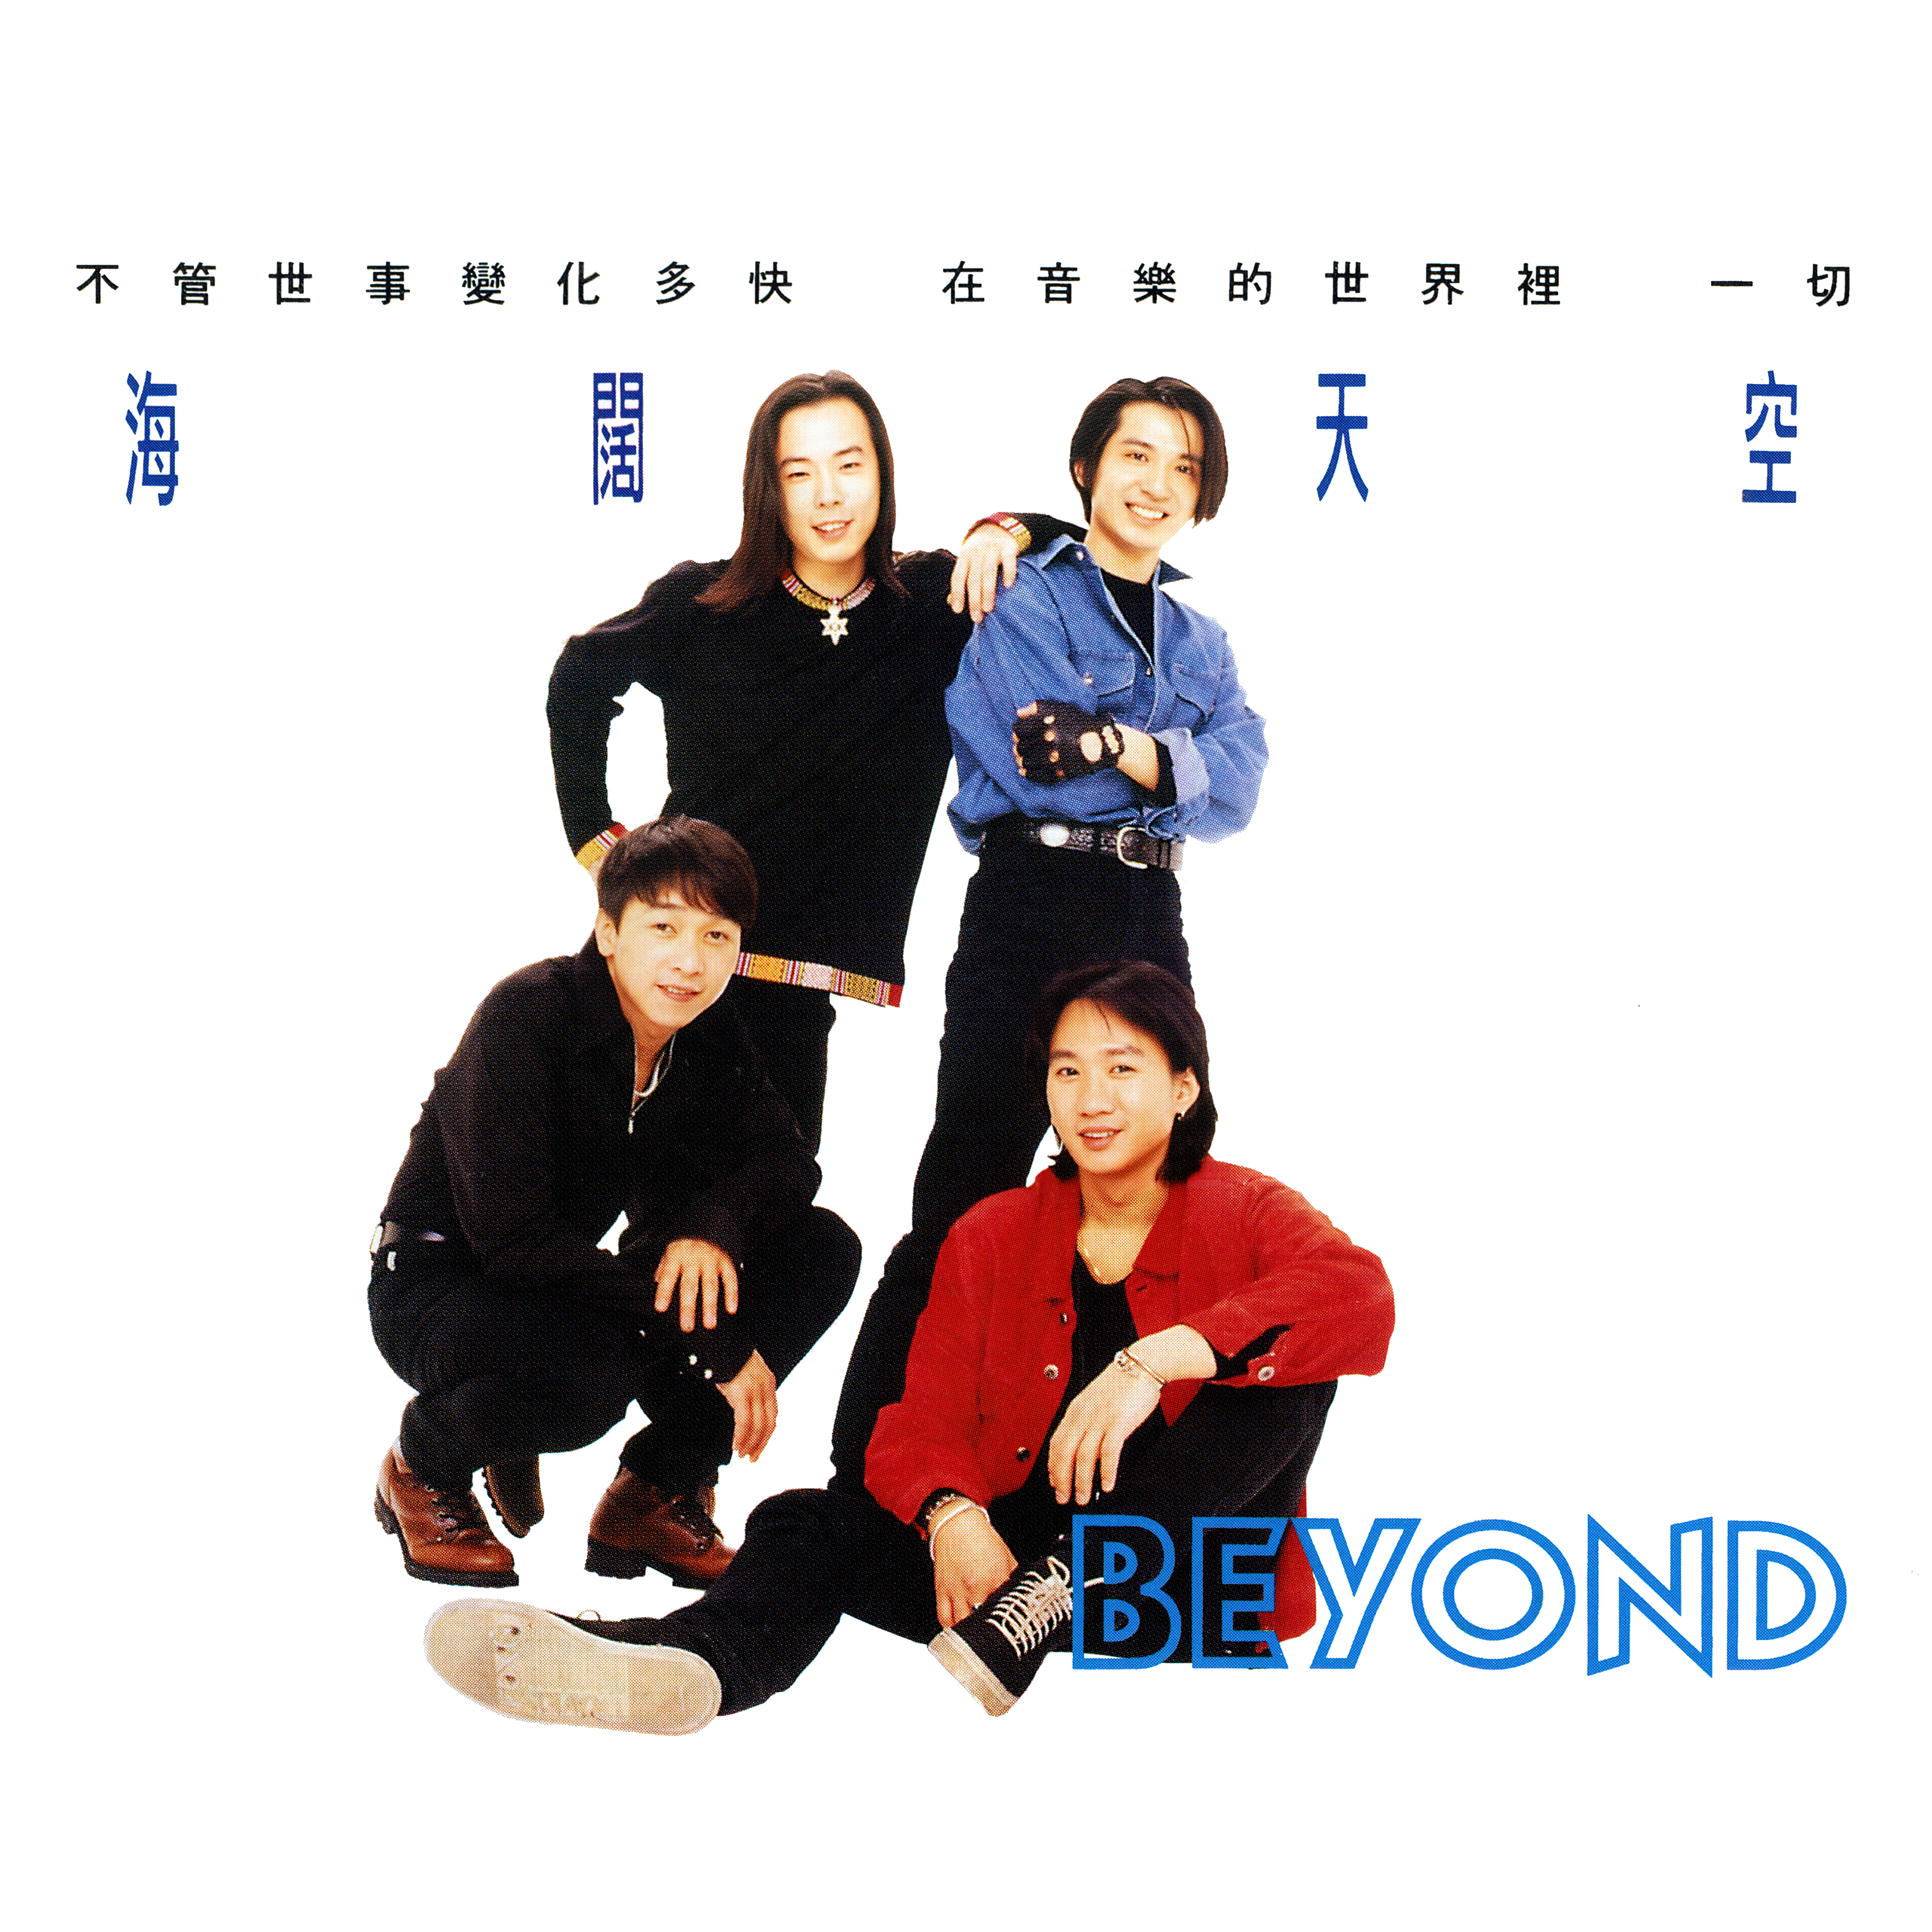 Beyond - 爱不容易说 (OT：完全地爱吧)